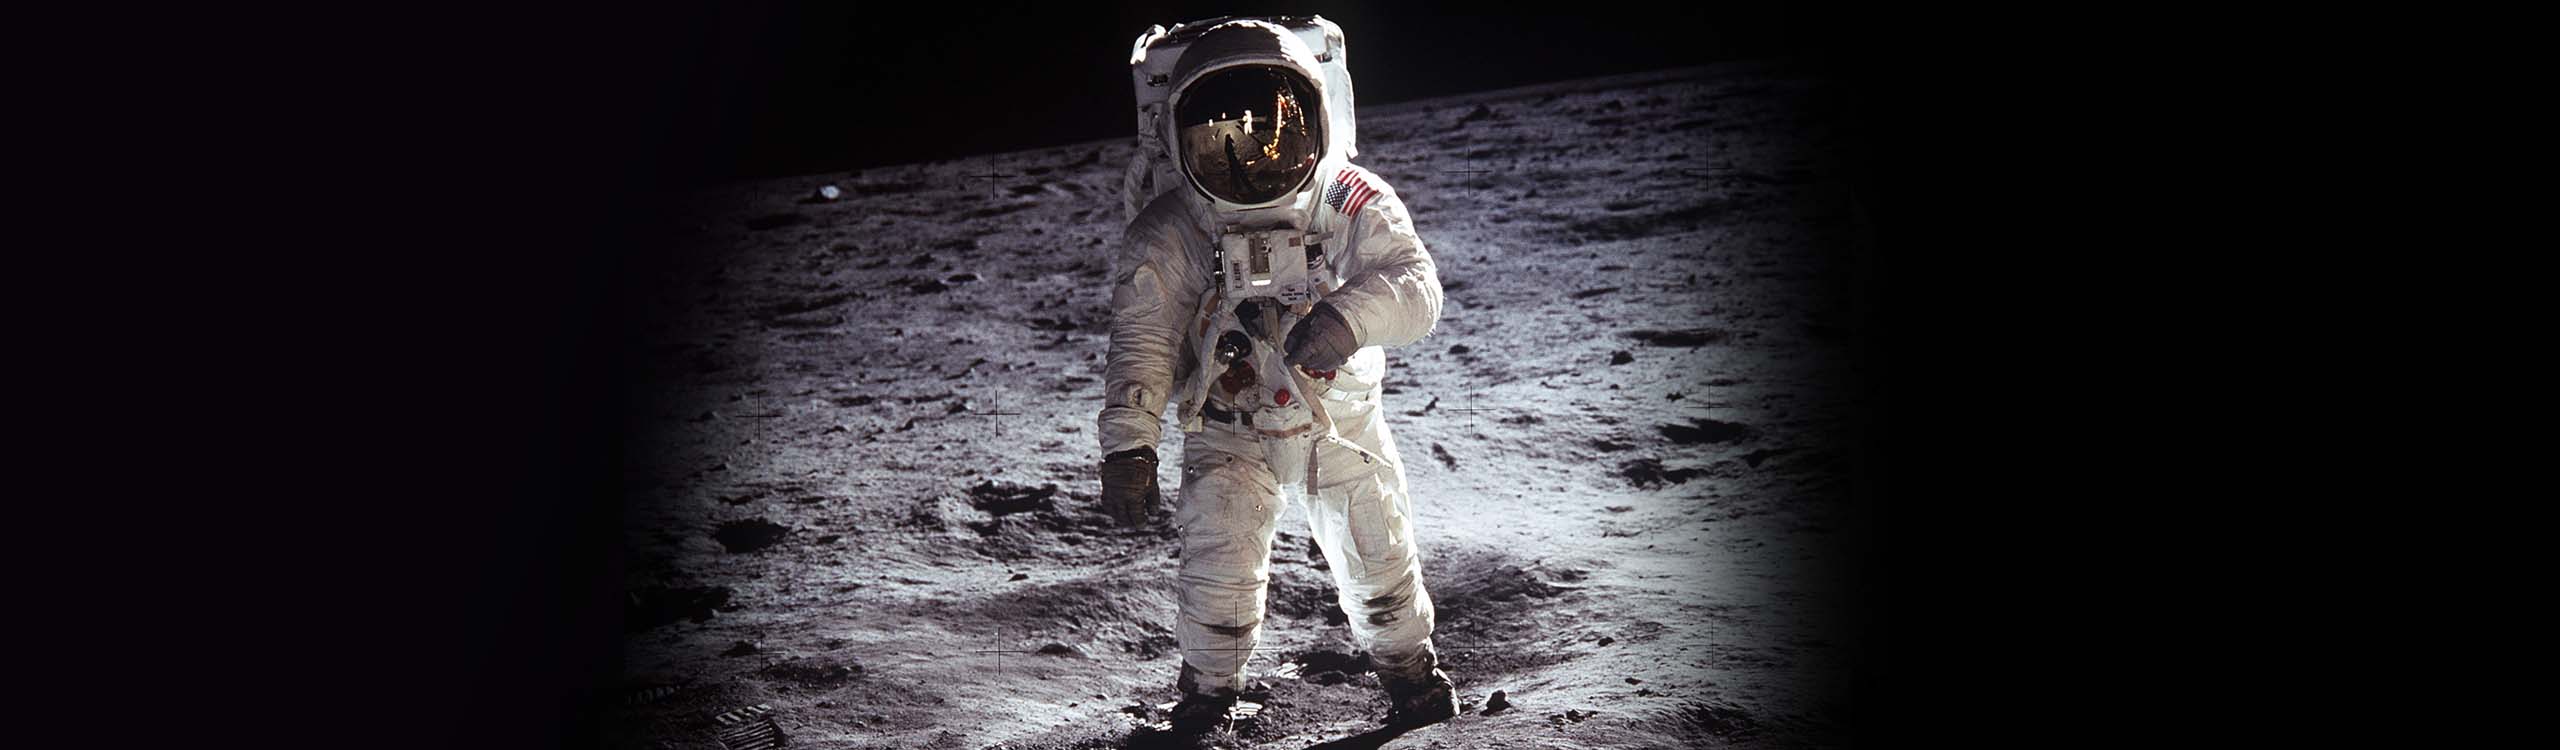 Astronaut Edwin “Buzz” Aldrin